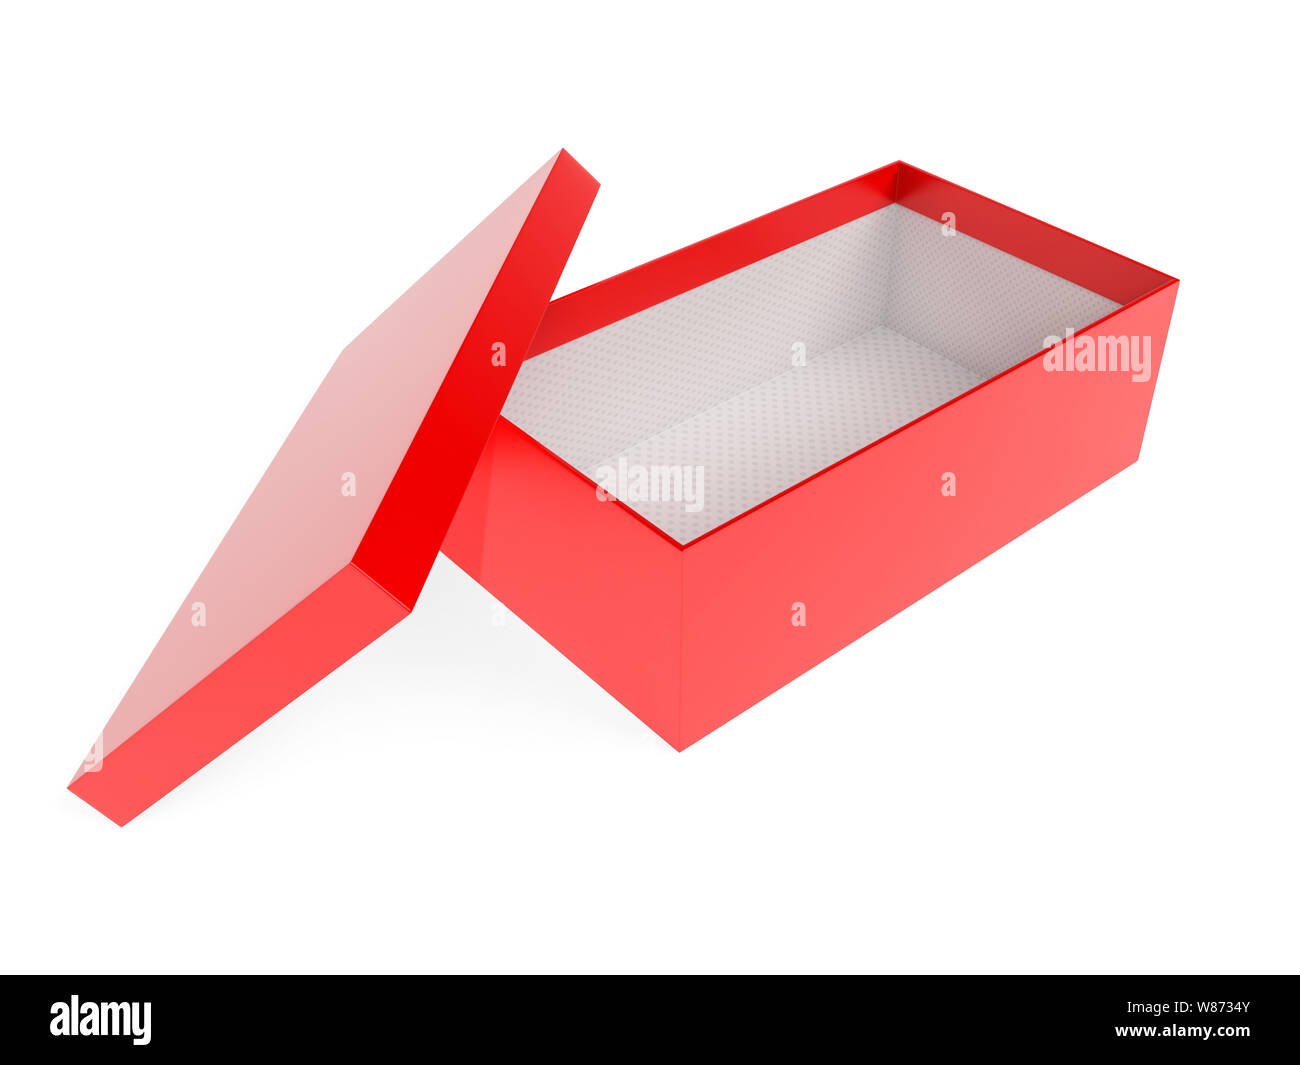 redbox rendering